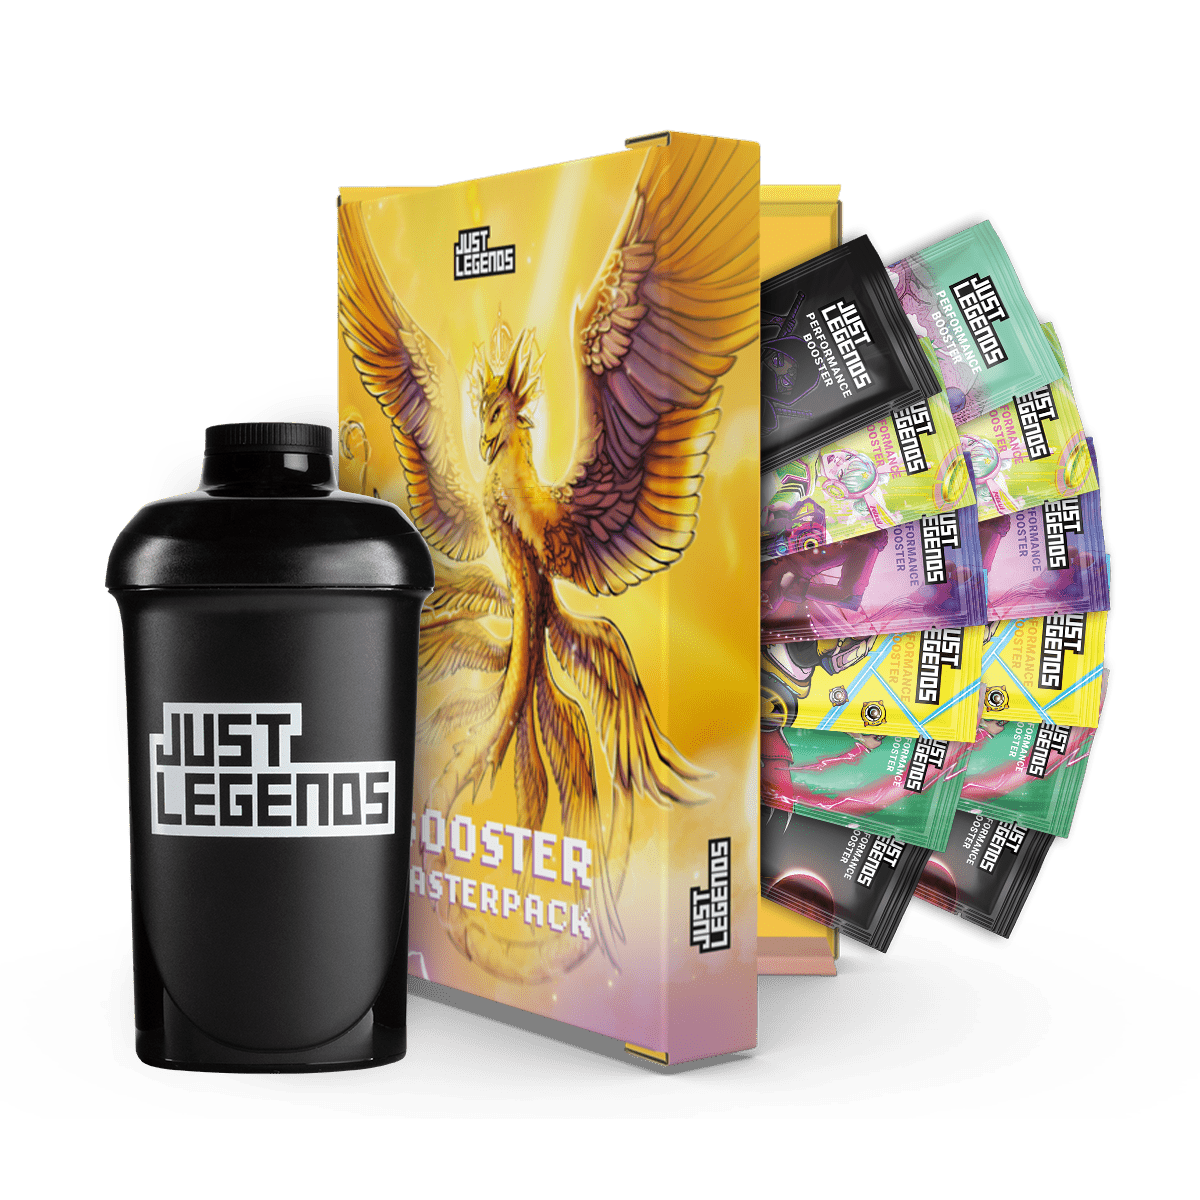 Just Legends Booster Probierpaket | Funktionaler, veganer Taster Pack auf Pulverbasis ohne Zucker, mit wenig Kalorien, vielen Vitaminen und natürlichen Aromen.